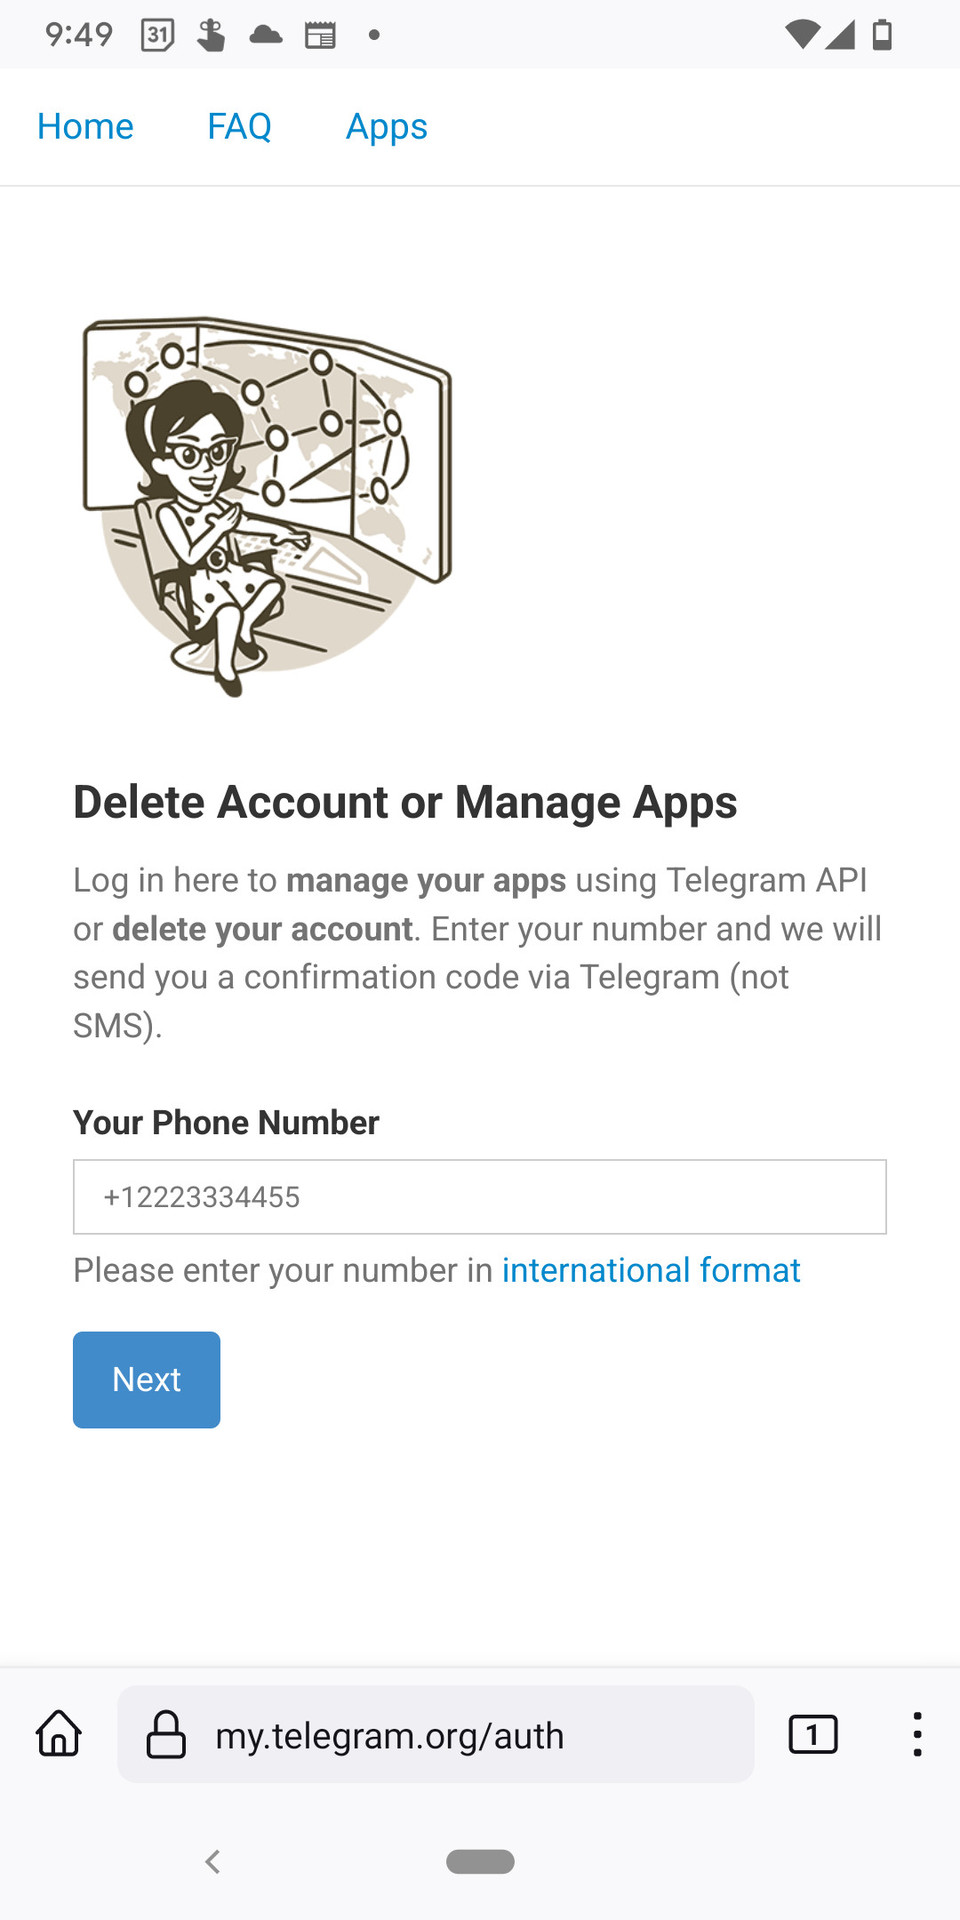 صفحة مصادقة بوابة الويب Telegram.  تقرأ "حذف الحساب أو إدارة التطبيقات" وهناك حقل لإدخال رقم هاتف يوجد تحته زر 